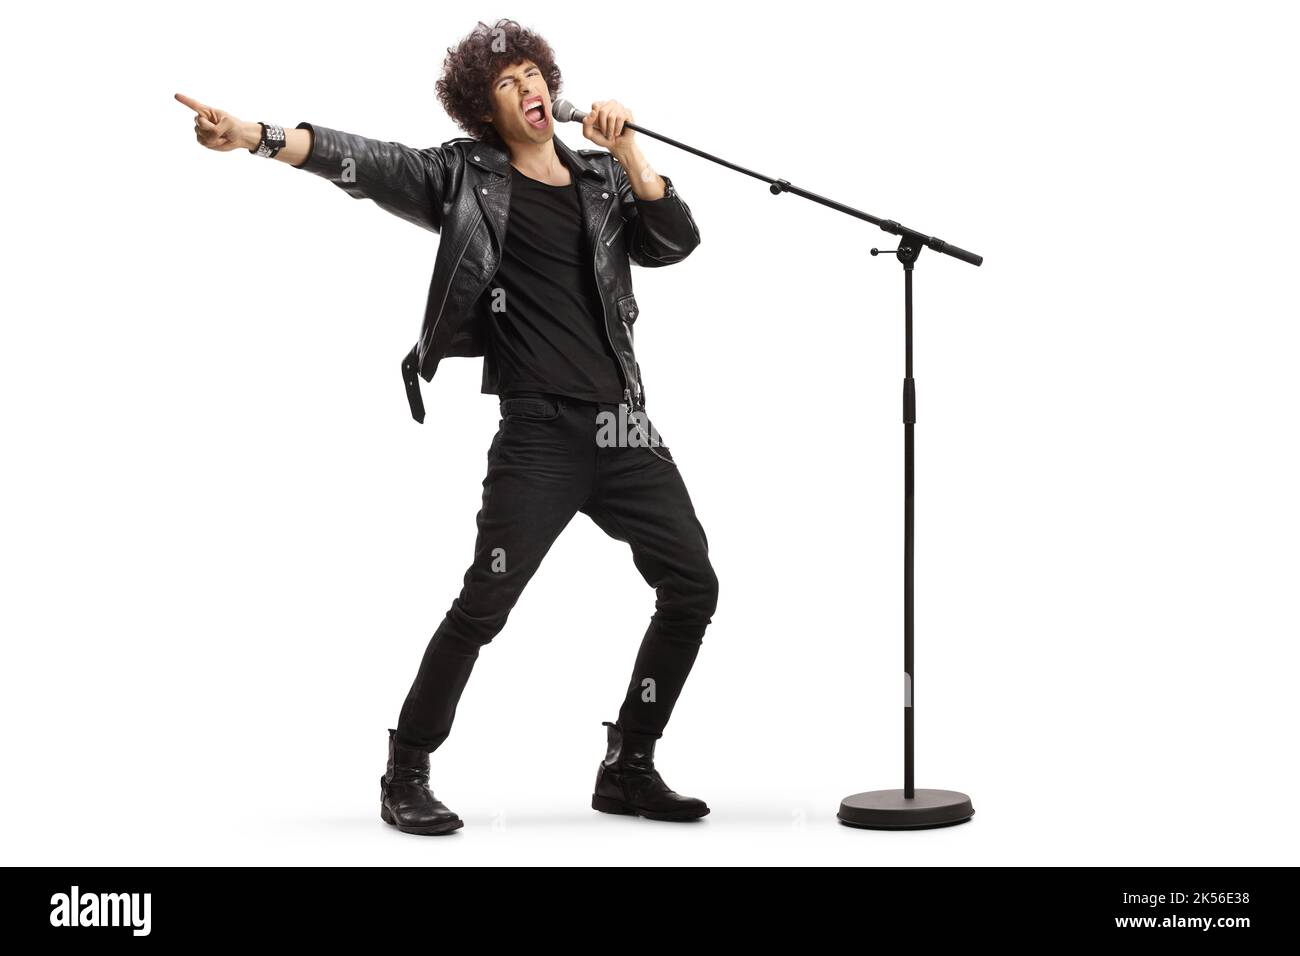 Männlicher Sänger in einer Lederjacke, der laut auf einem Mikrofon singt, das auf weißem Hintergrund isoliert ist Stockfoto